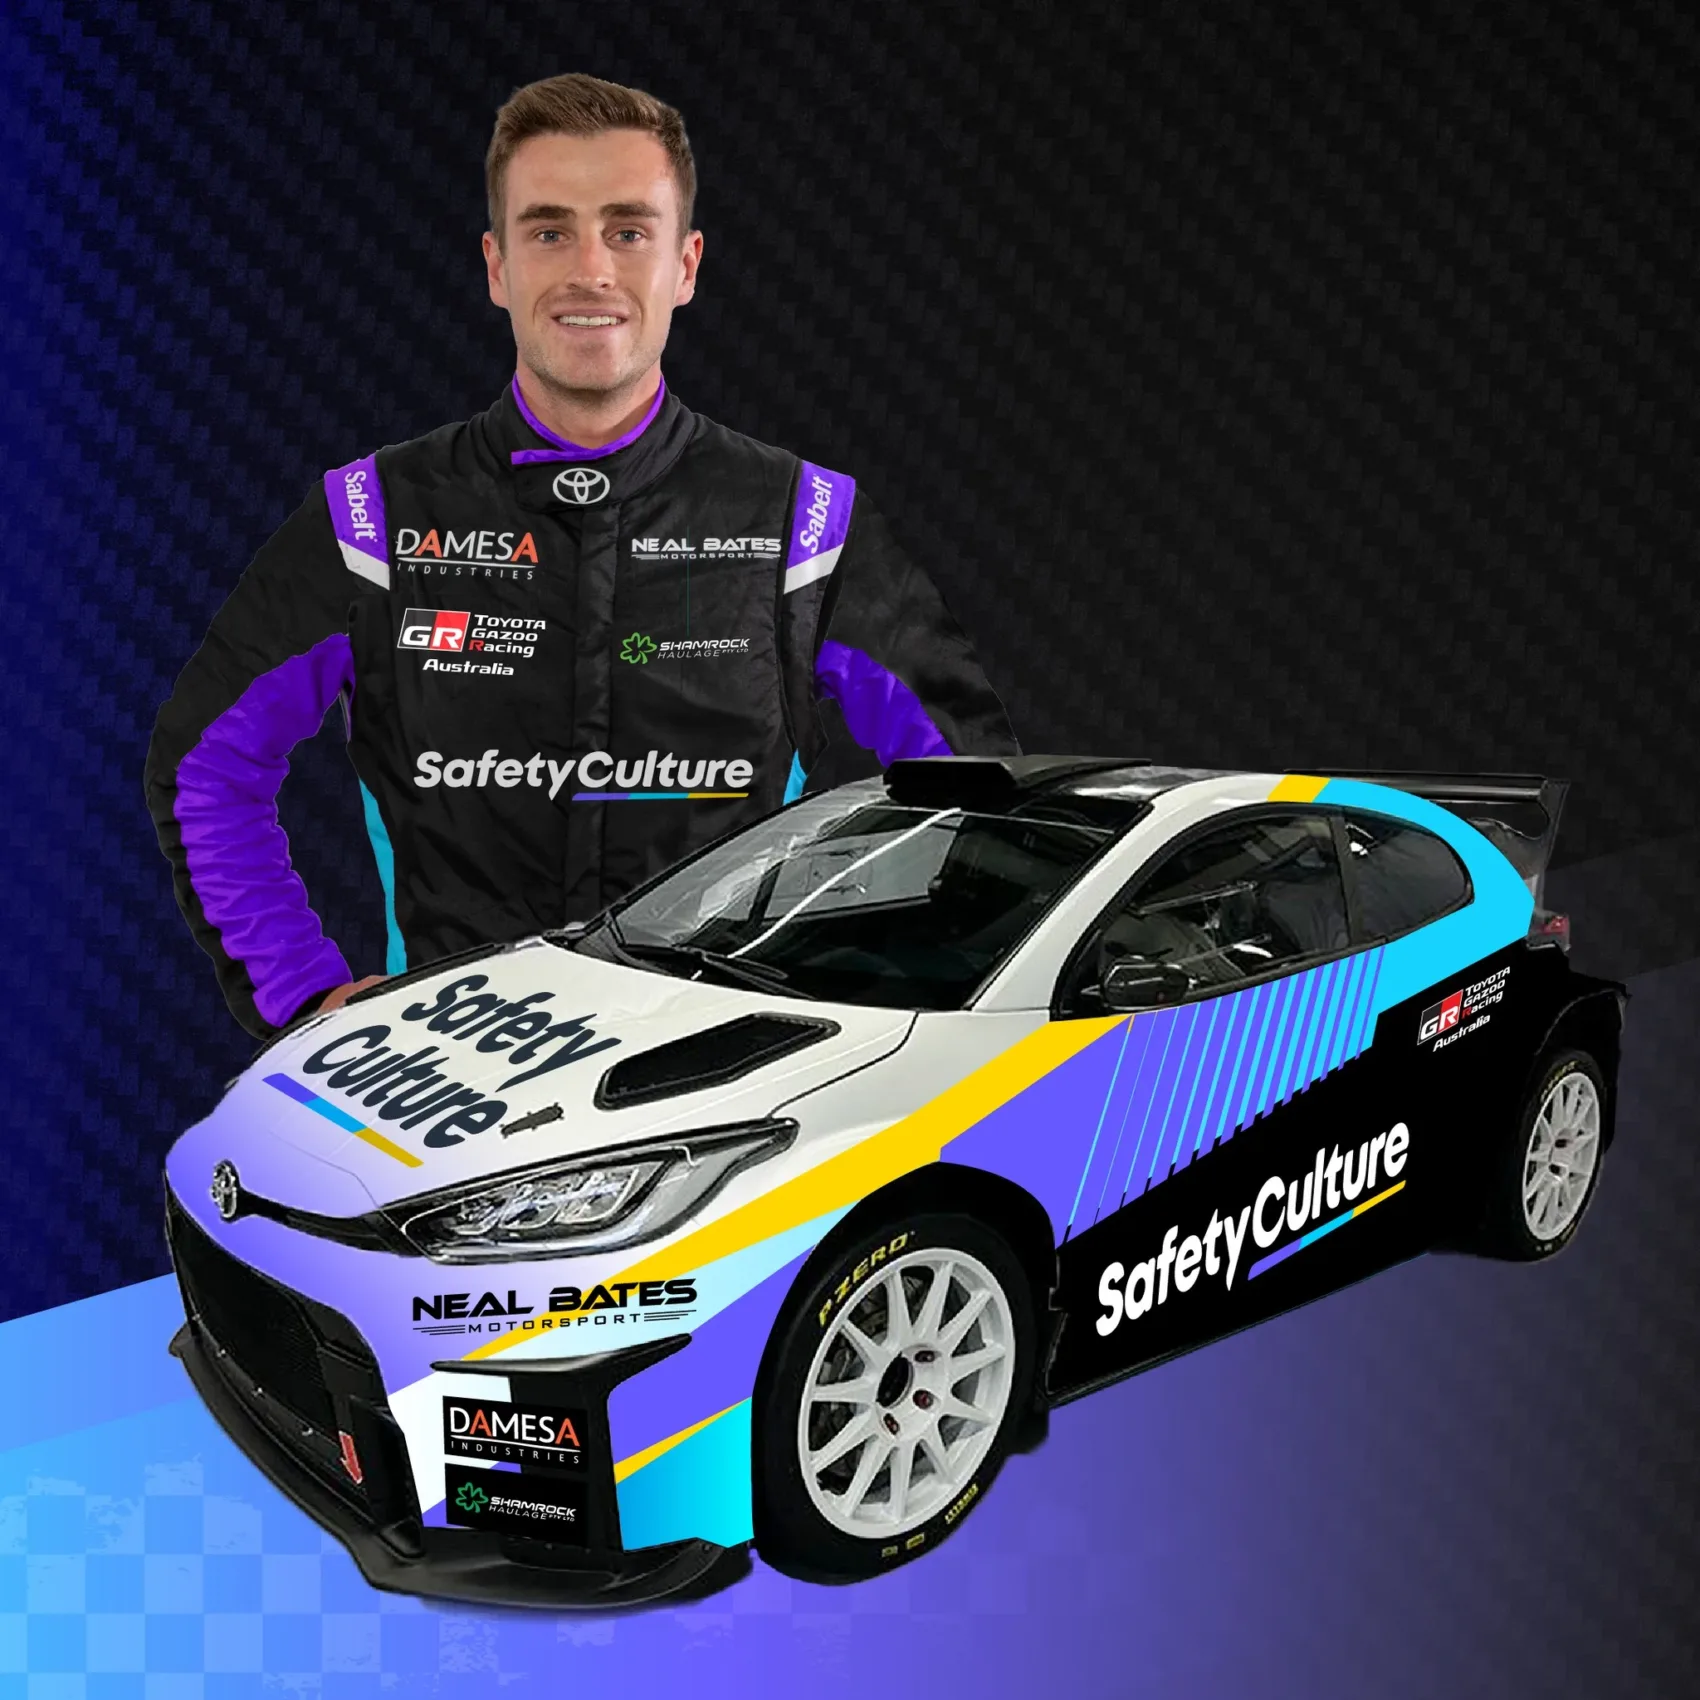 Ausztrália bajnoka debütál Portugáliában az első WRC-futamán